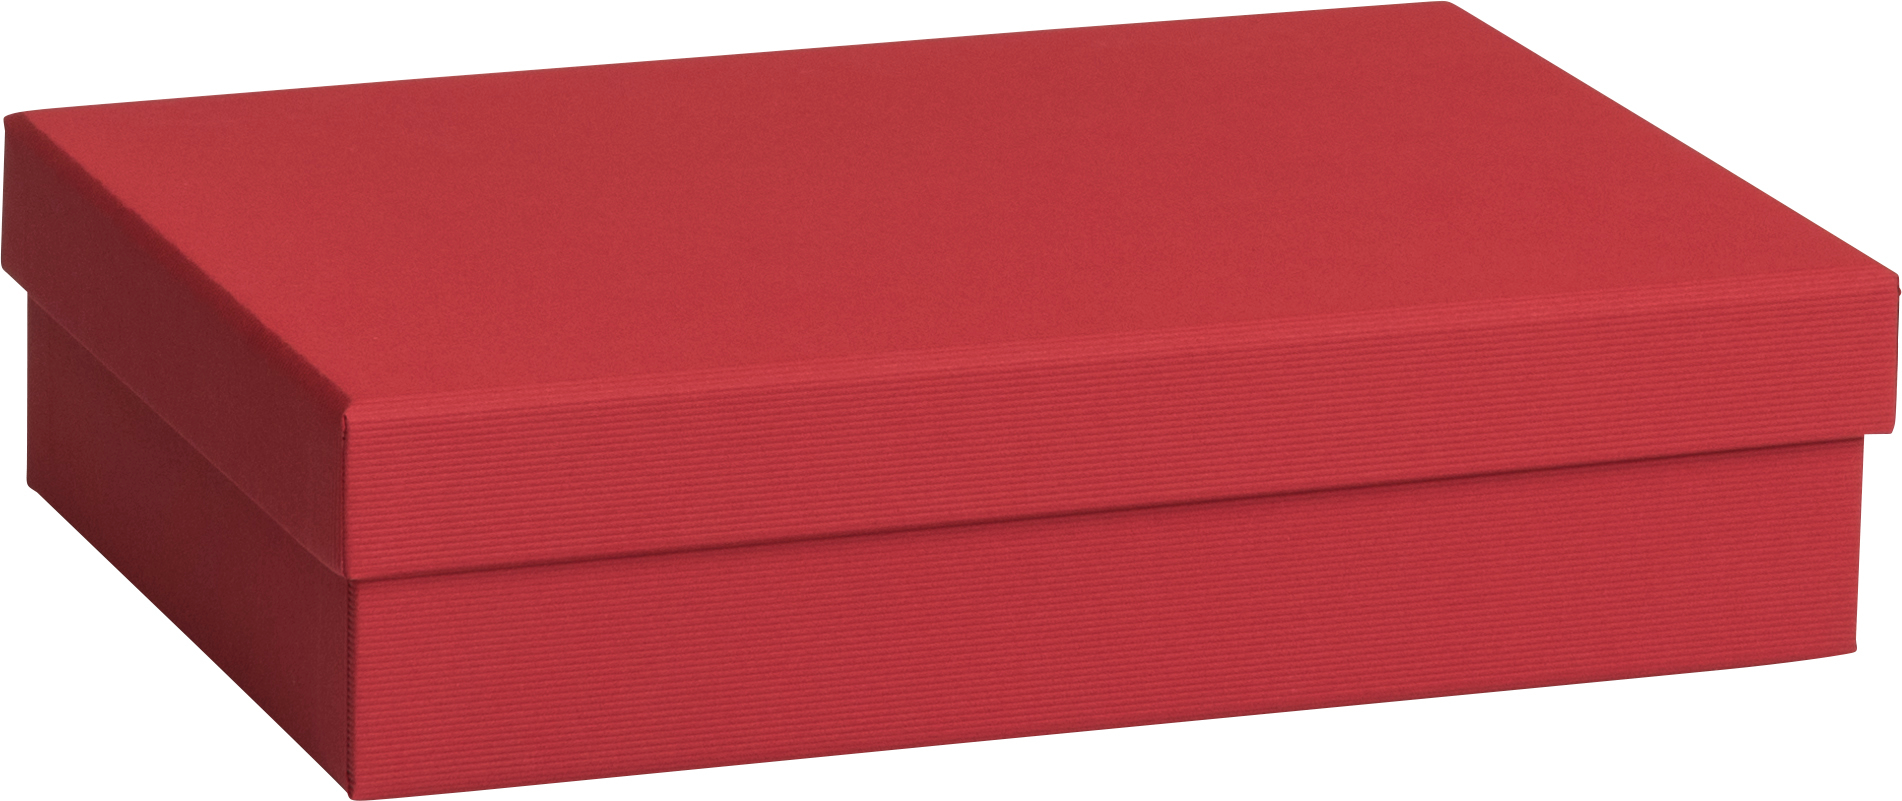 STEWO Boîte cadeau One Colour 2551784292 rouge foncé 16.5x24x6cm